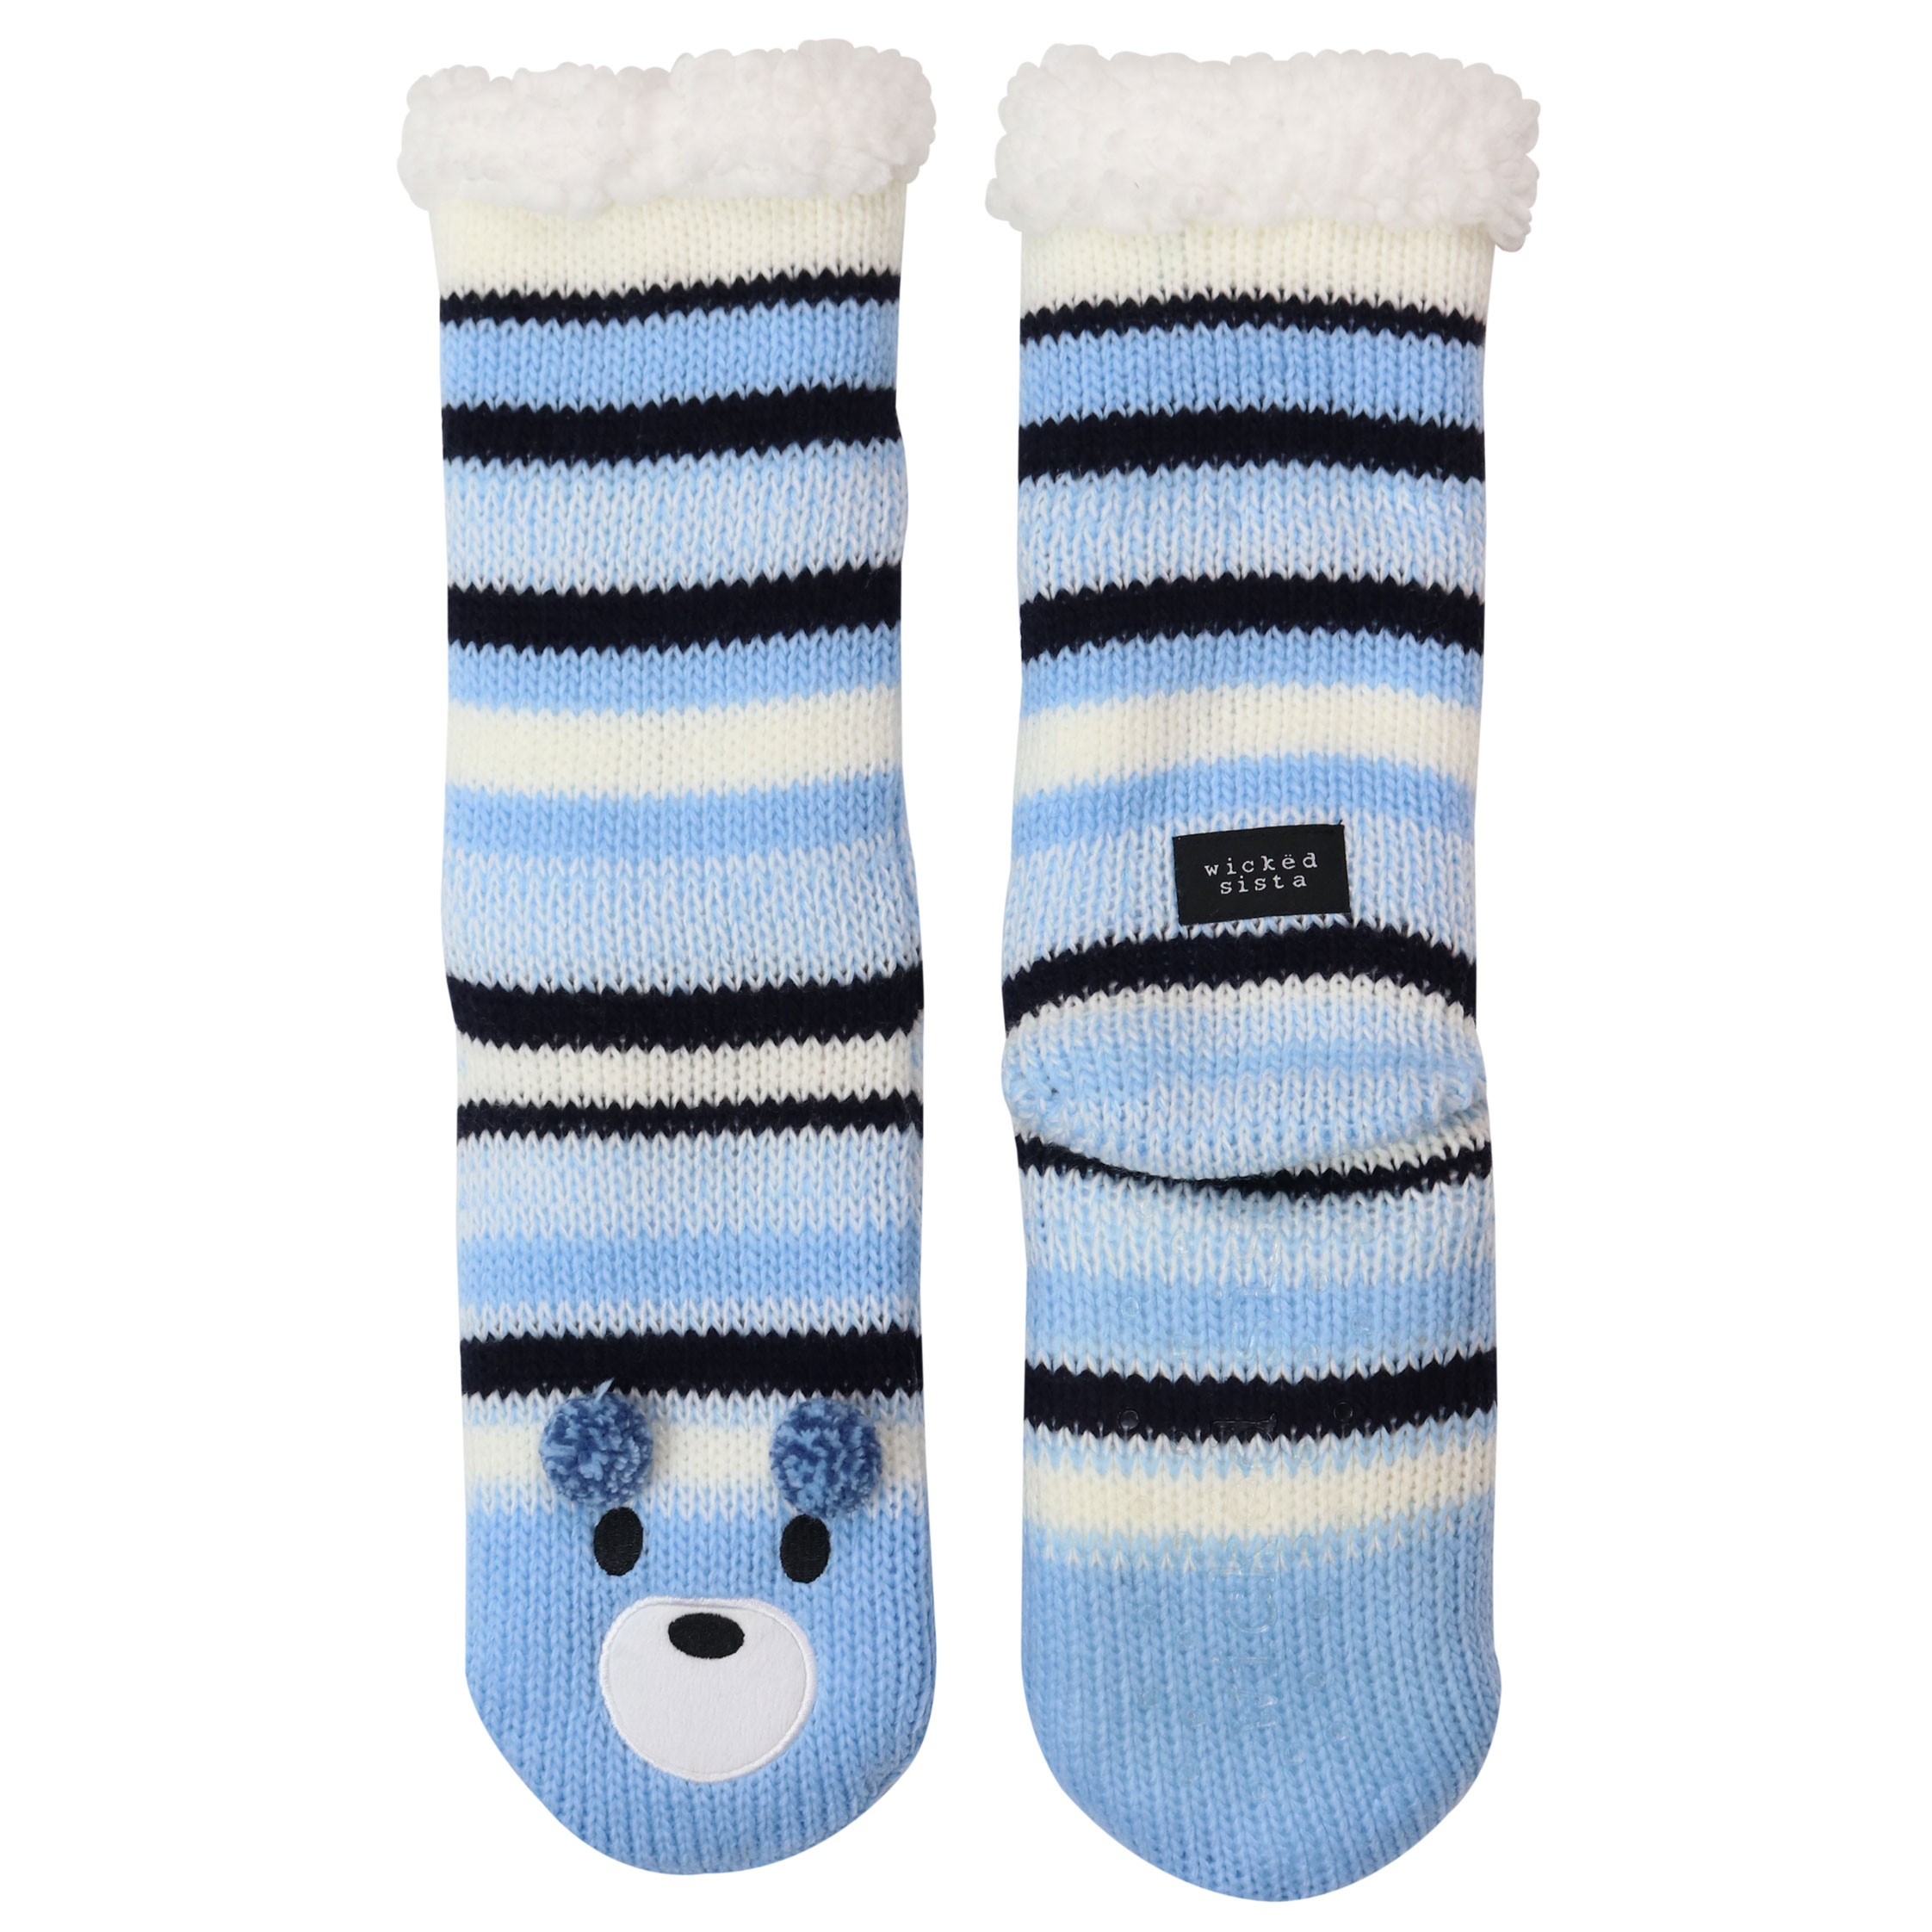 Bear stripe slipper socks | Wicked Sista | Cosmetic Bags, Jewellery ...